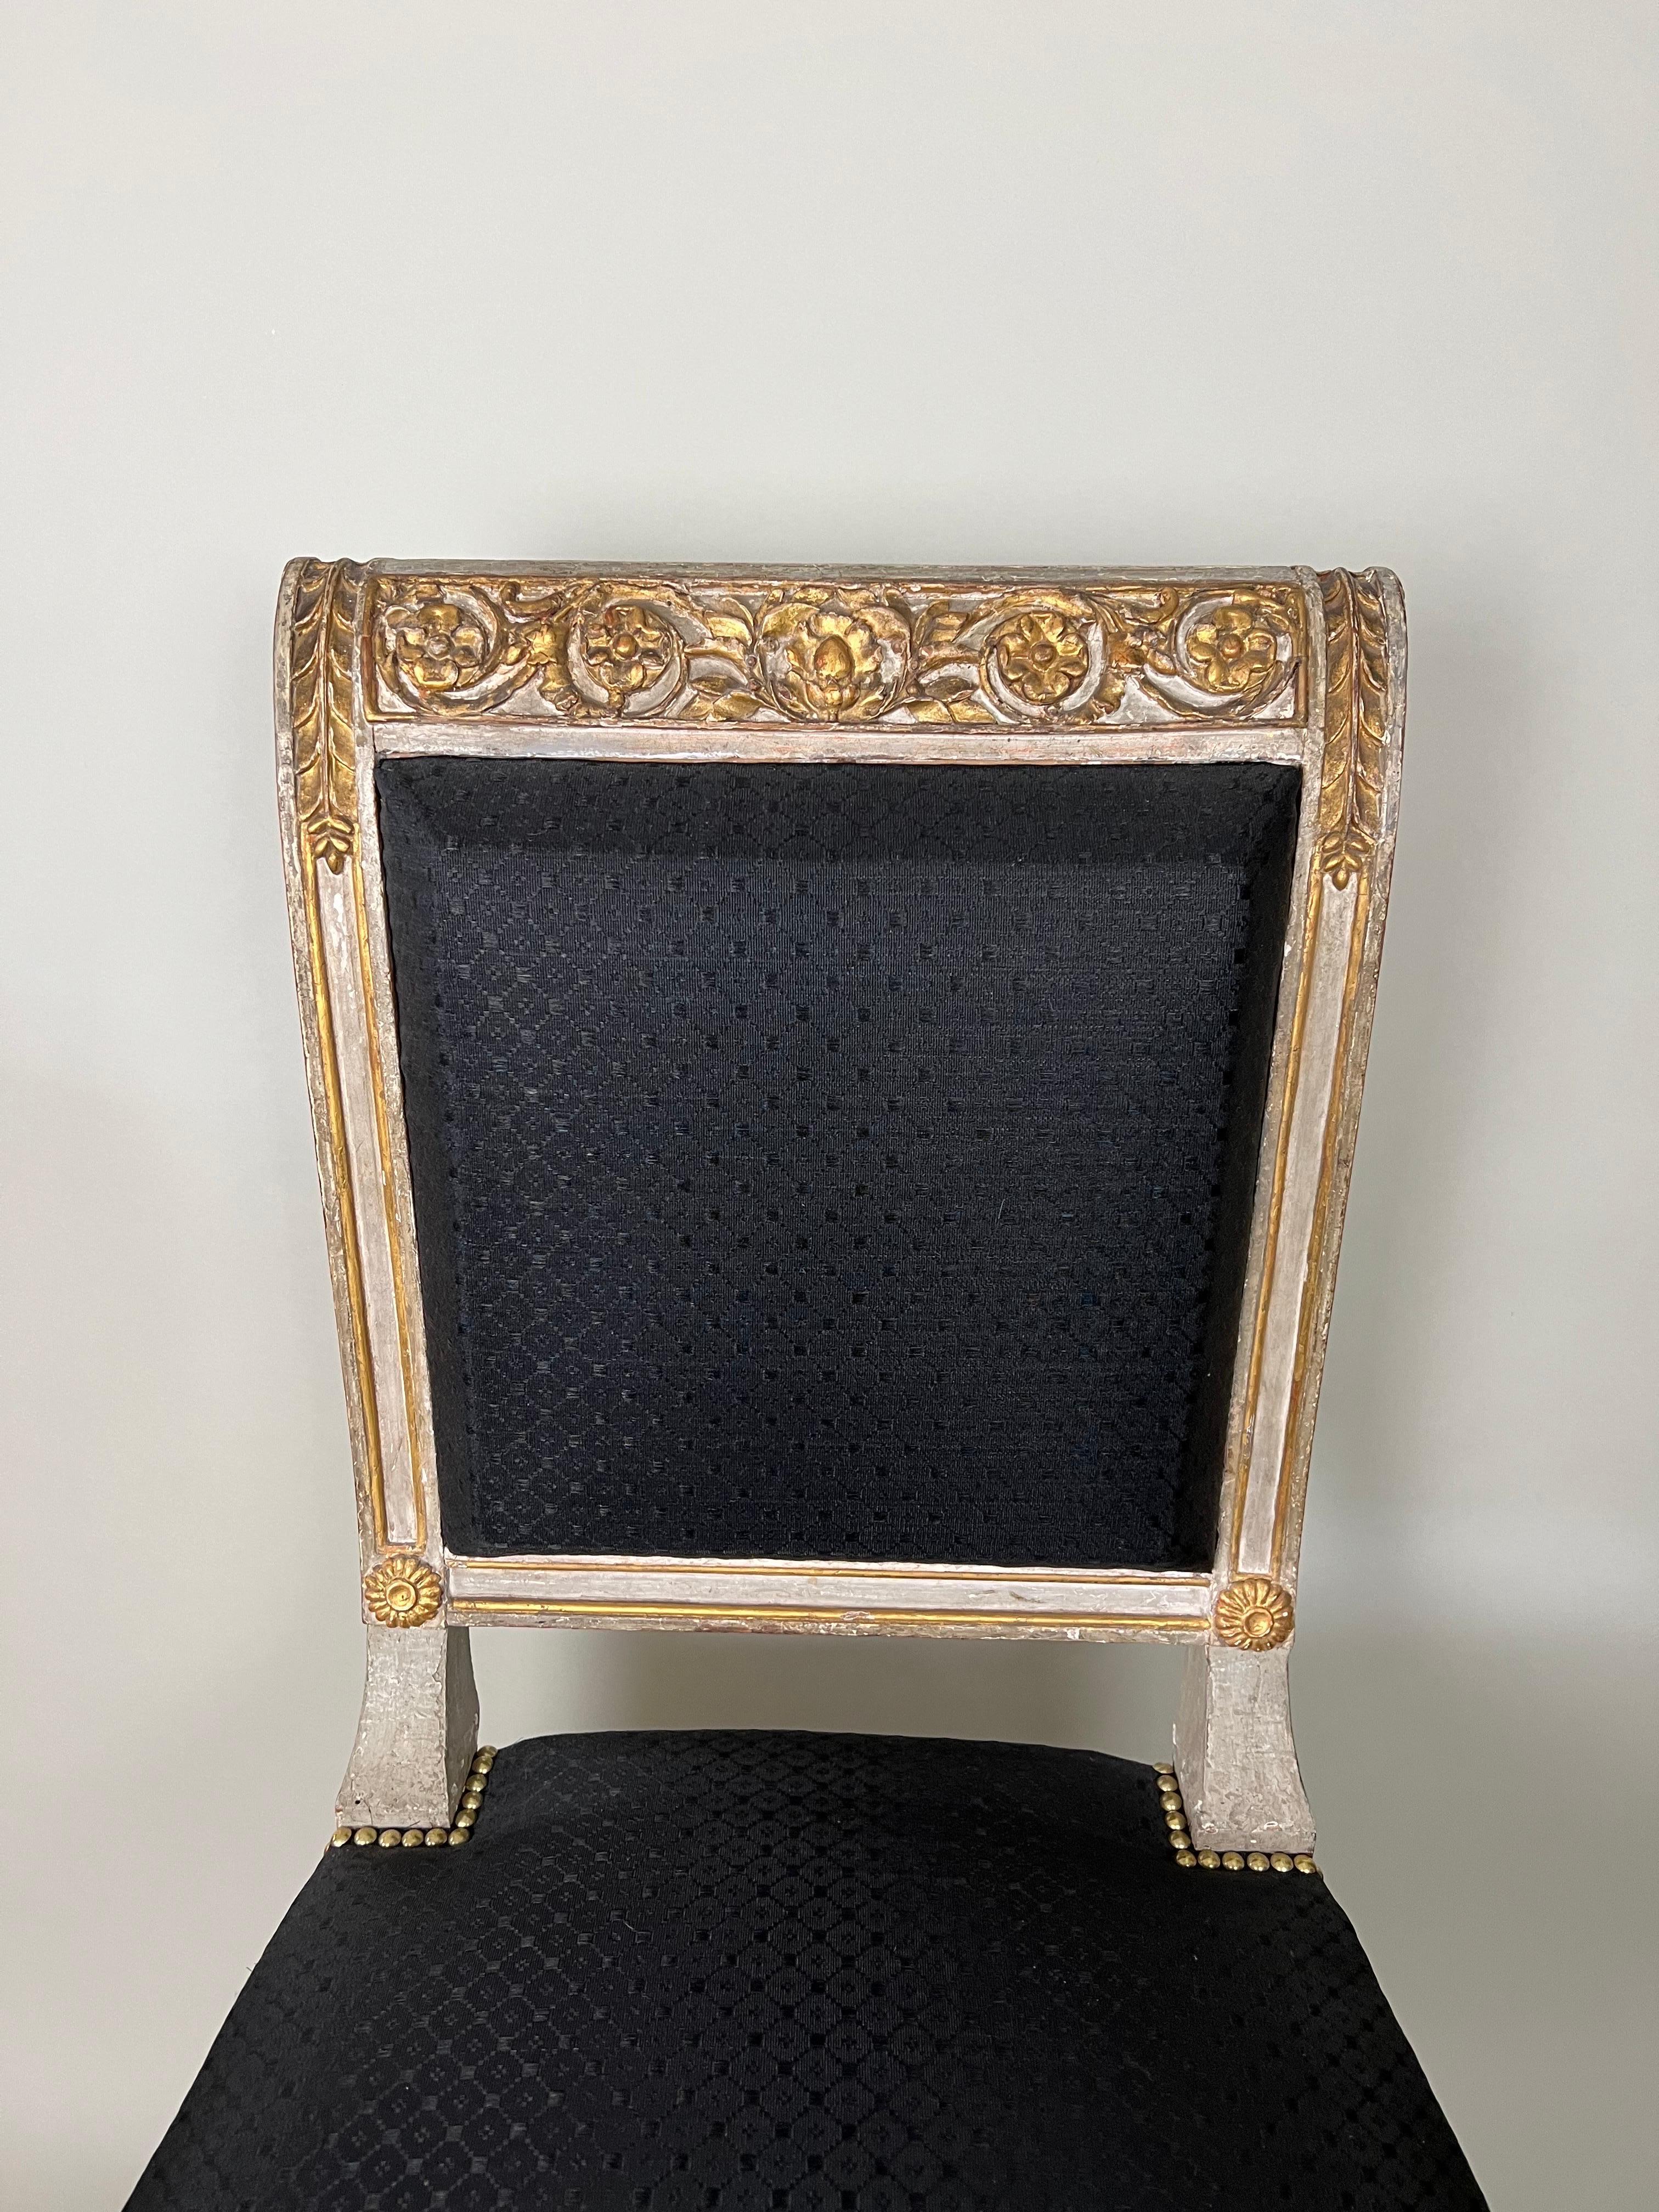 Die beiden Beistellstühle stammen aus dem Palazzo Tursi in Genua. Residence von König Vittorio Emanuele und Königin Maria Teresa. Wahrscheinlich von Carlo Randoni (1755-1831) entworfen. Sie sind mit schwarzem Rosshaar gepolstert. Es handelt sich um